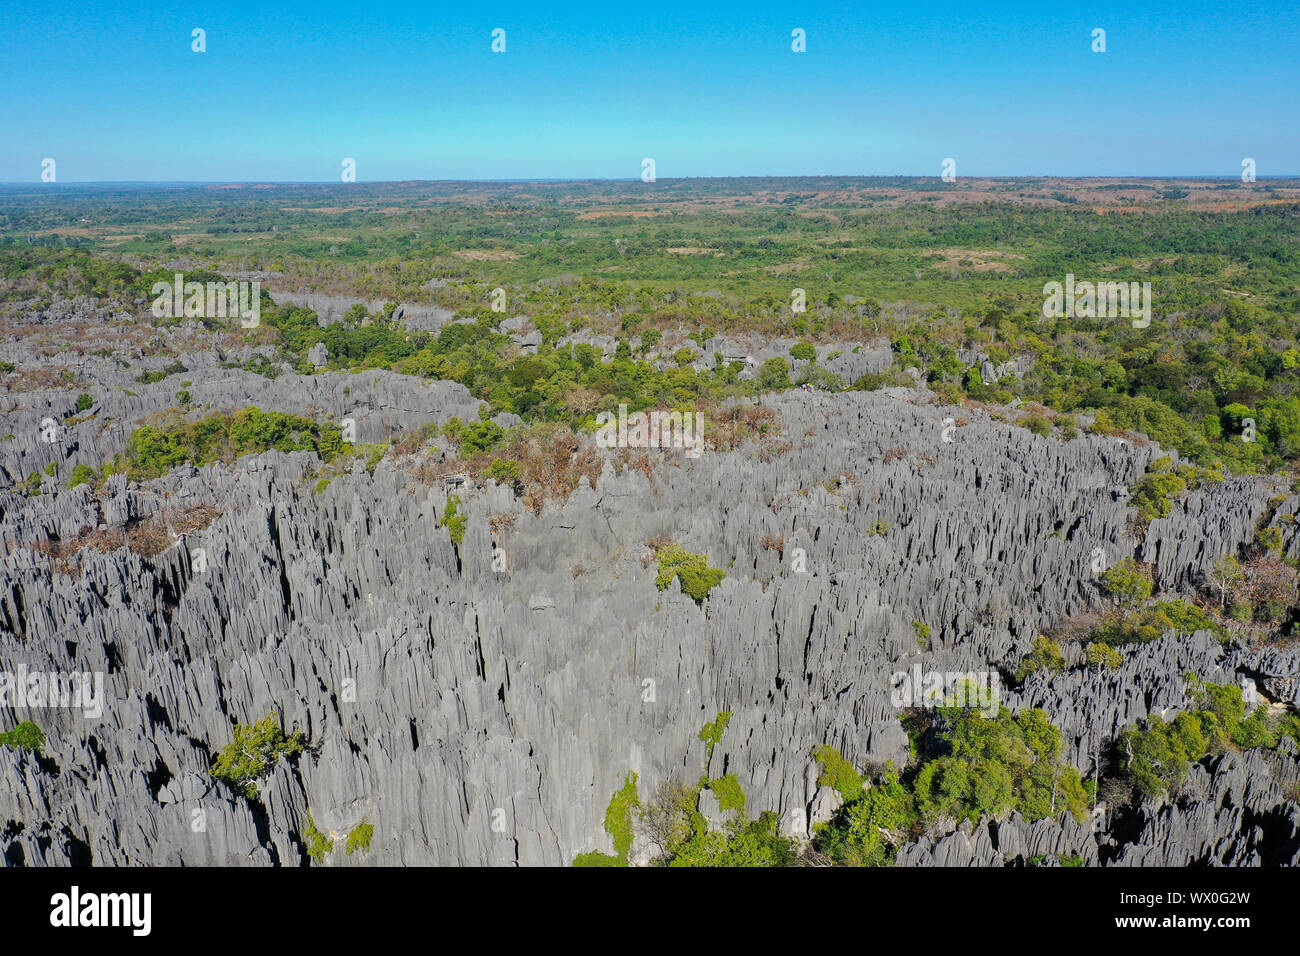 La formation de calcaire karstique au Parc National des Tsingy de Bemaraha, UNESCO World Heritage Site, région de la Tsiribihina, Madagascar, Afrique Banque D'Images